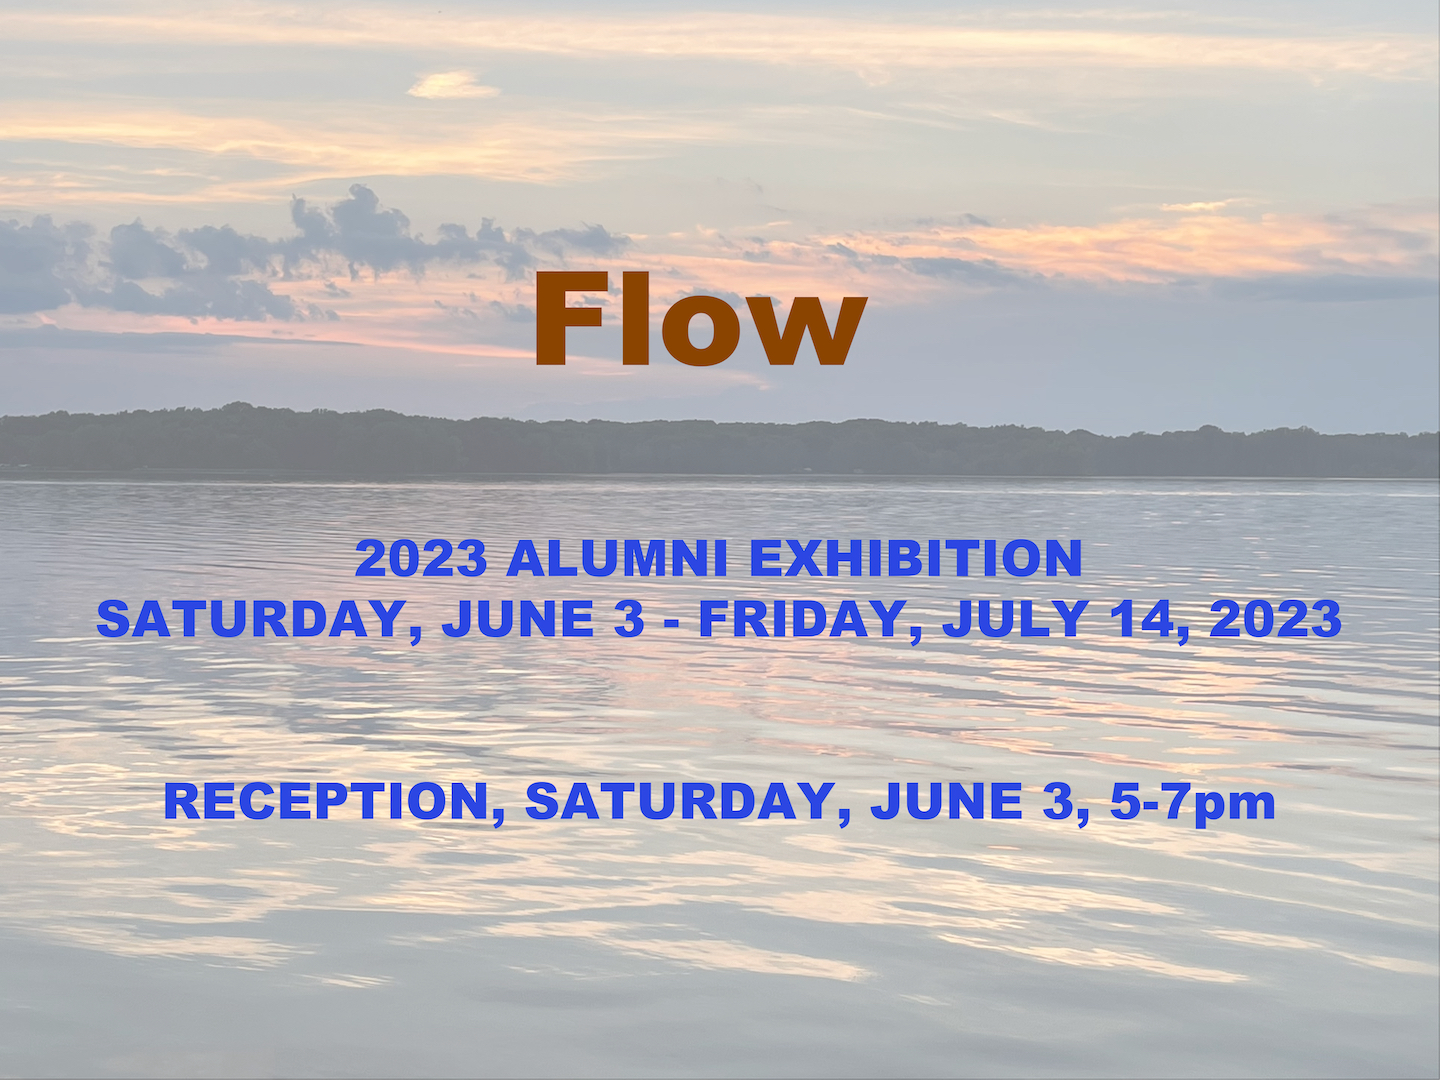 Flow. 2023 Alumni Exhibition Saturday, June 3 - Friday, July 14,2023